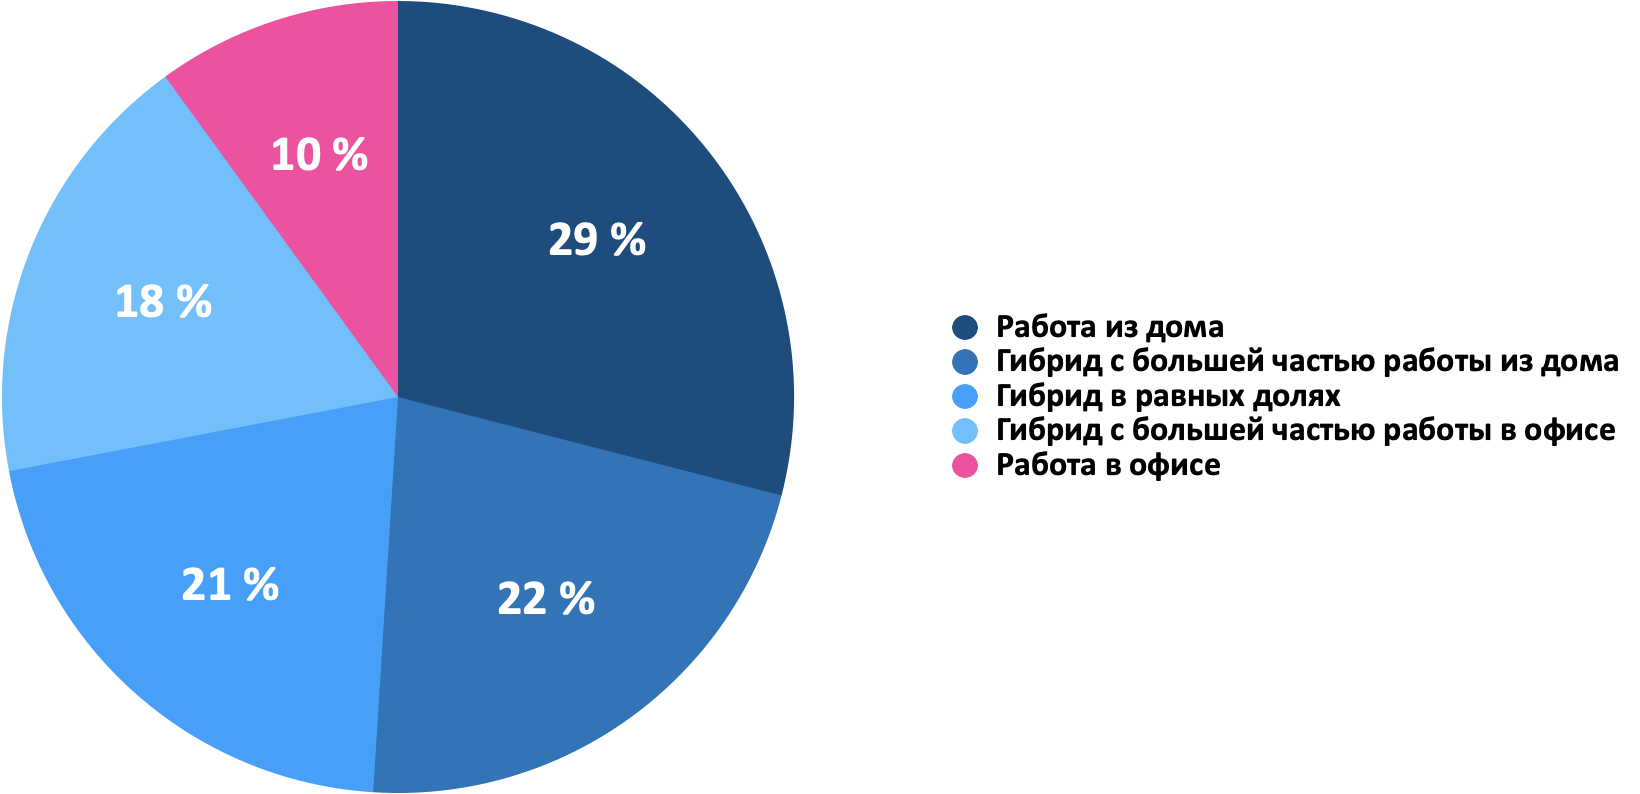 Популярность различных опций рабочих пространств для поколения Z.